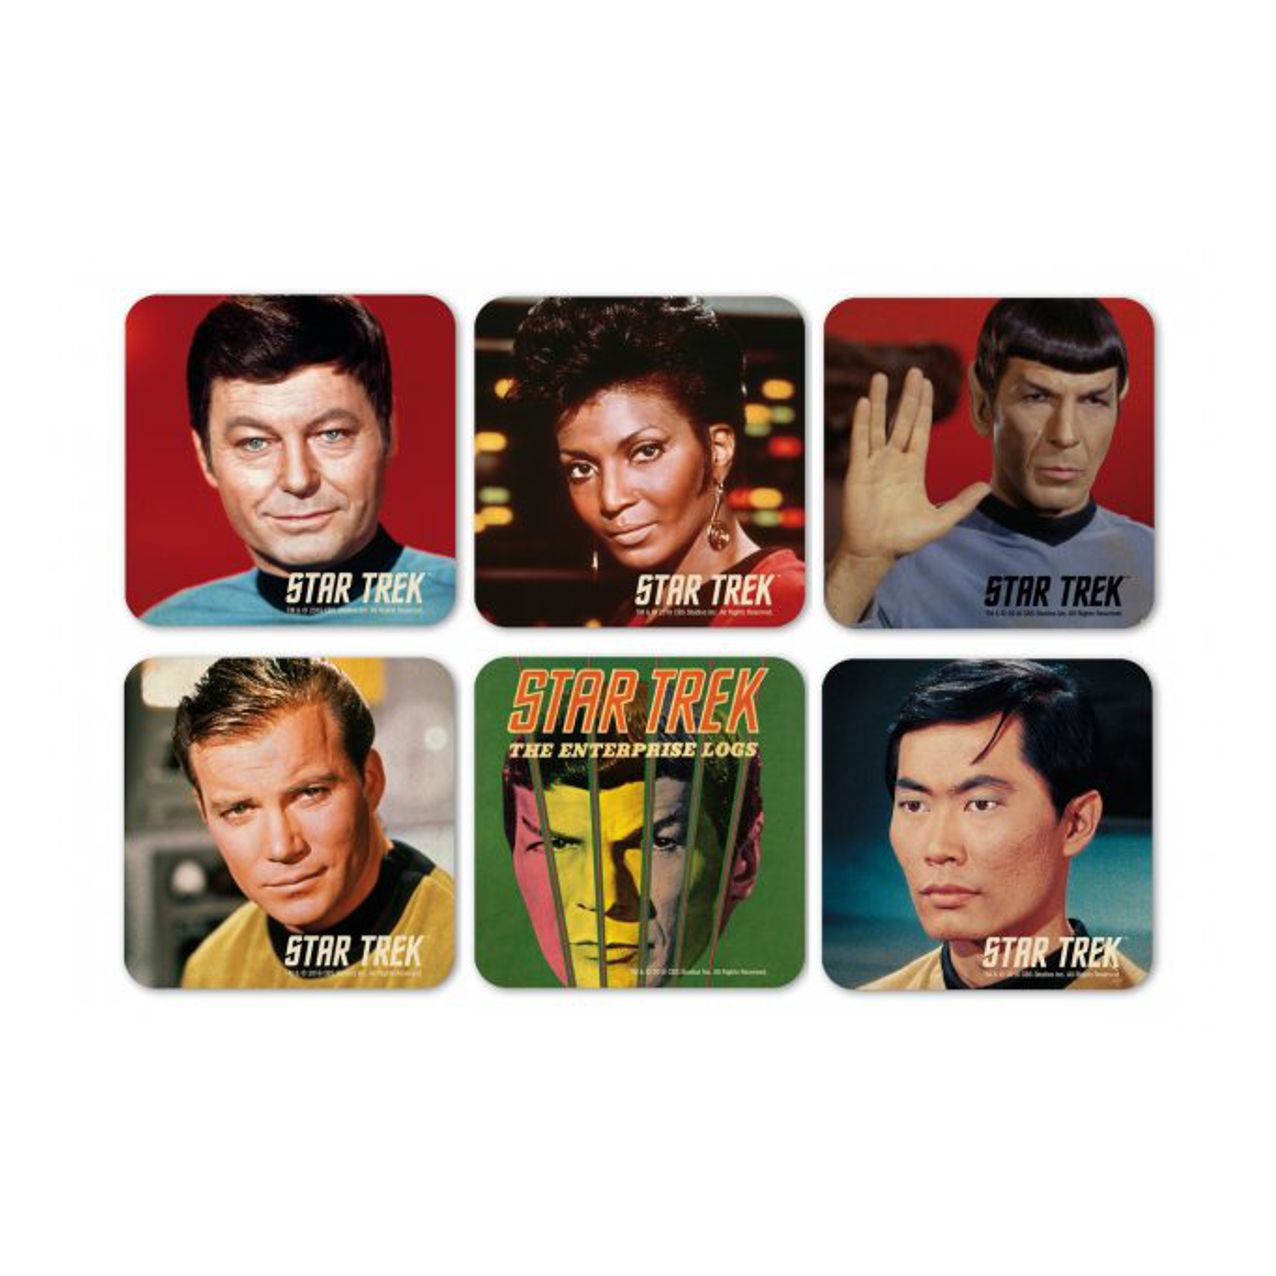 Star Trek Fanartikel kaufen Trekkie Merchandise The